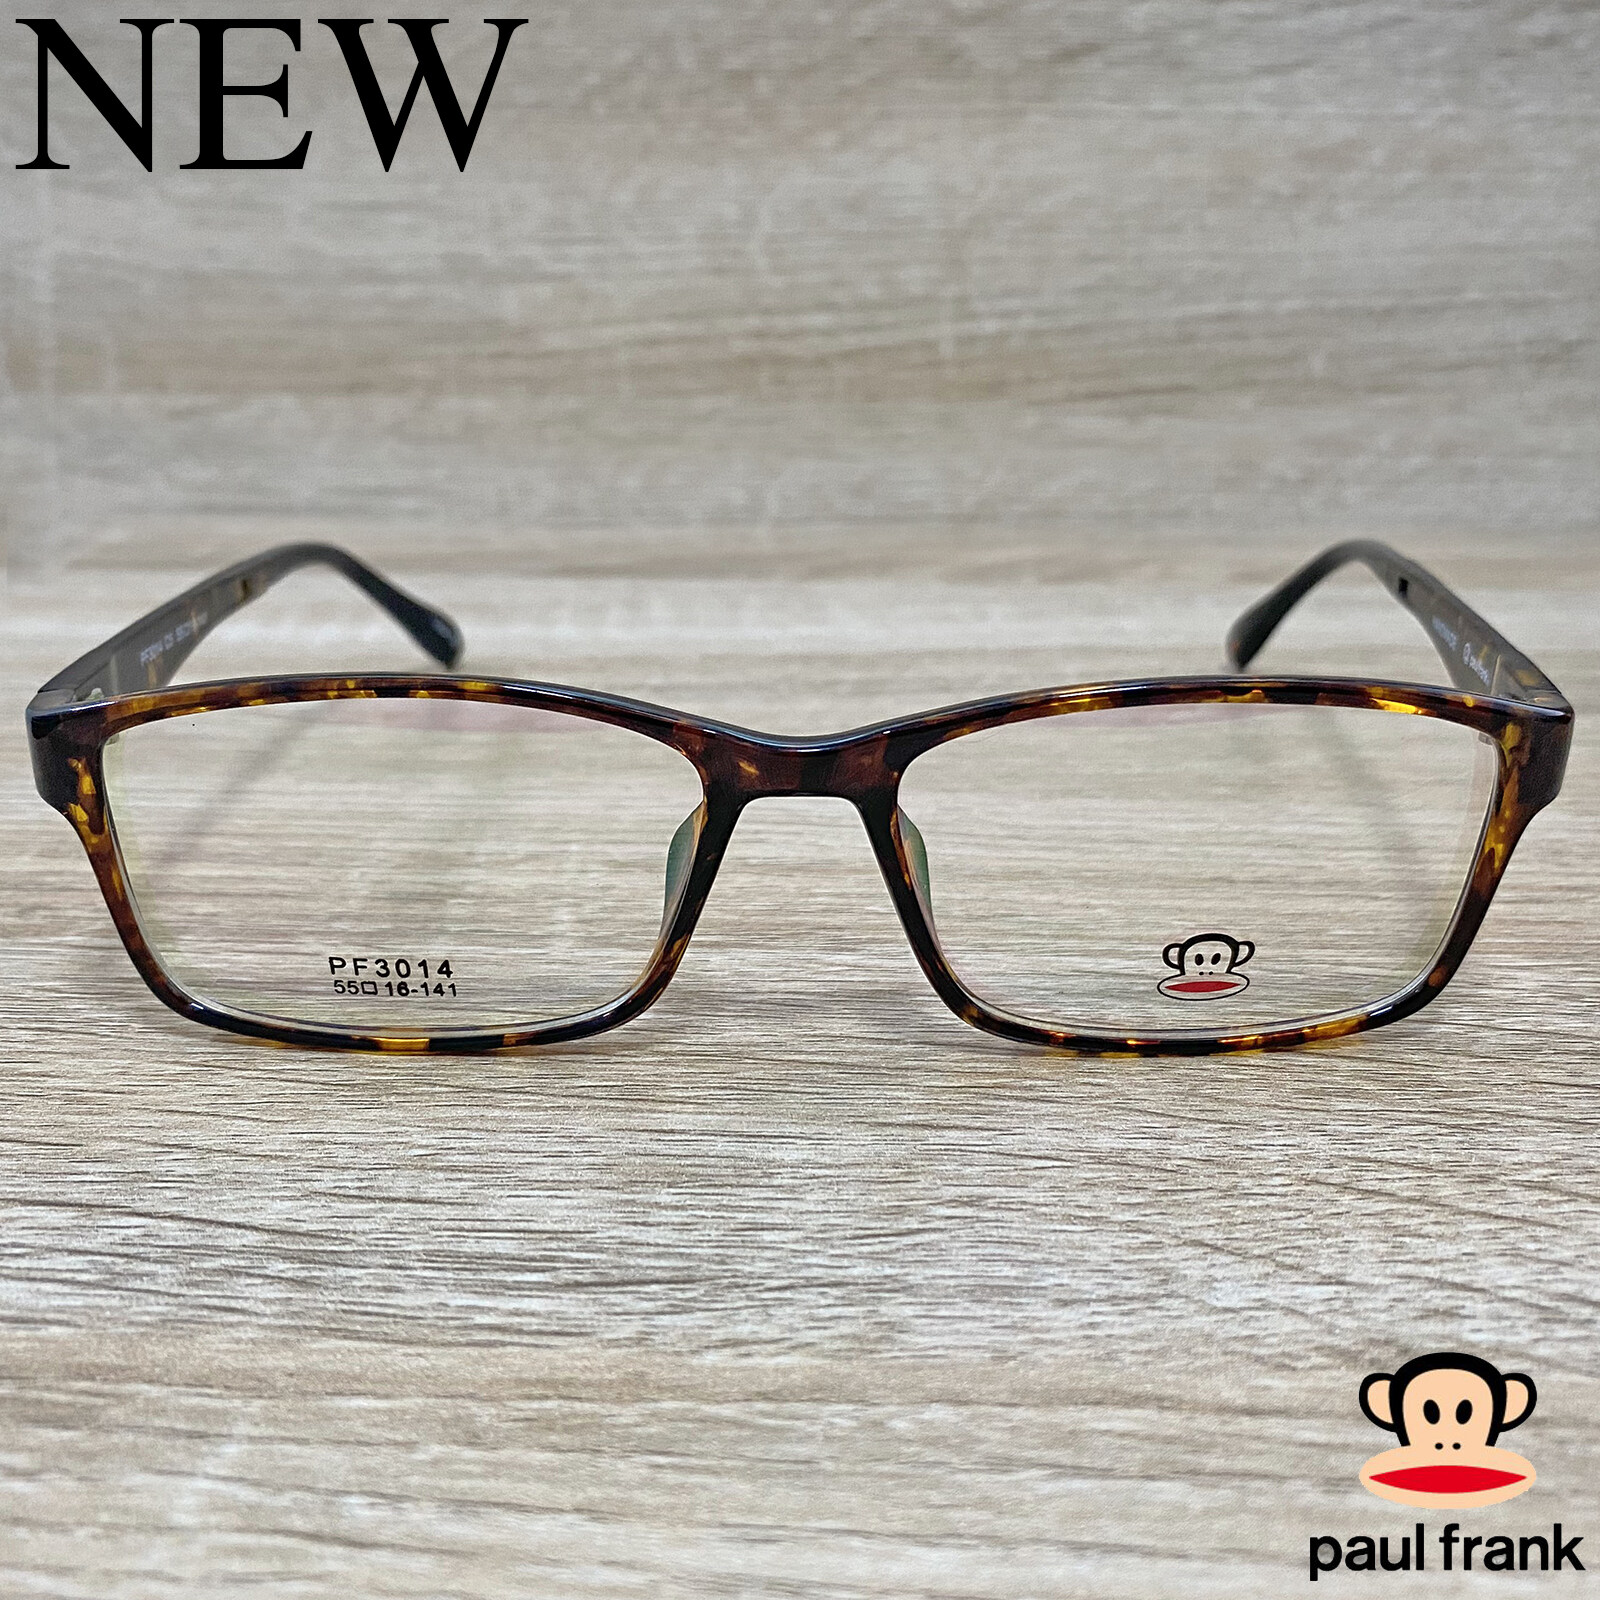 Fashion กรอบแว่นตา สำหรับตัดเลนส์ แว่นตาชาย หญิง แว่นตา รุ่น Paul Frank 3041 สีน้ำตาลกละ กรอบเต็ม ทรงเหลี่ยม ขาข้อต่อ วัสดุ TR 90 รับตัดเลนส์ทุกชนิด